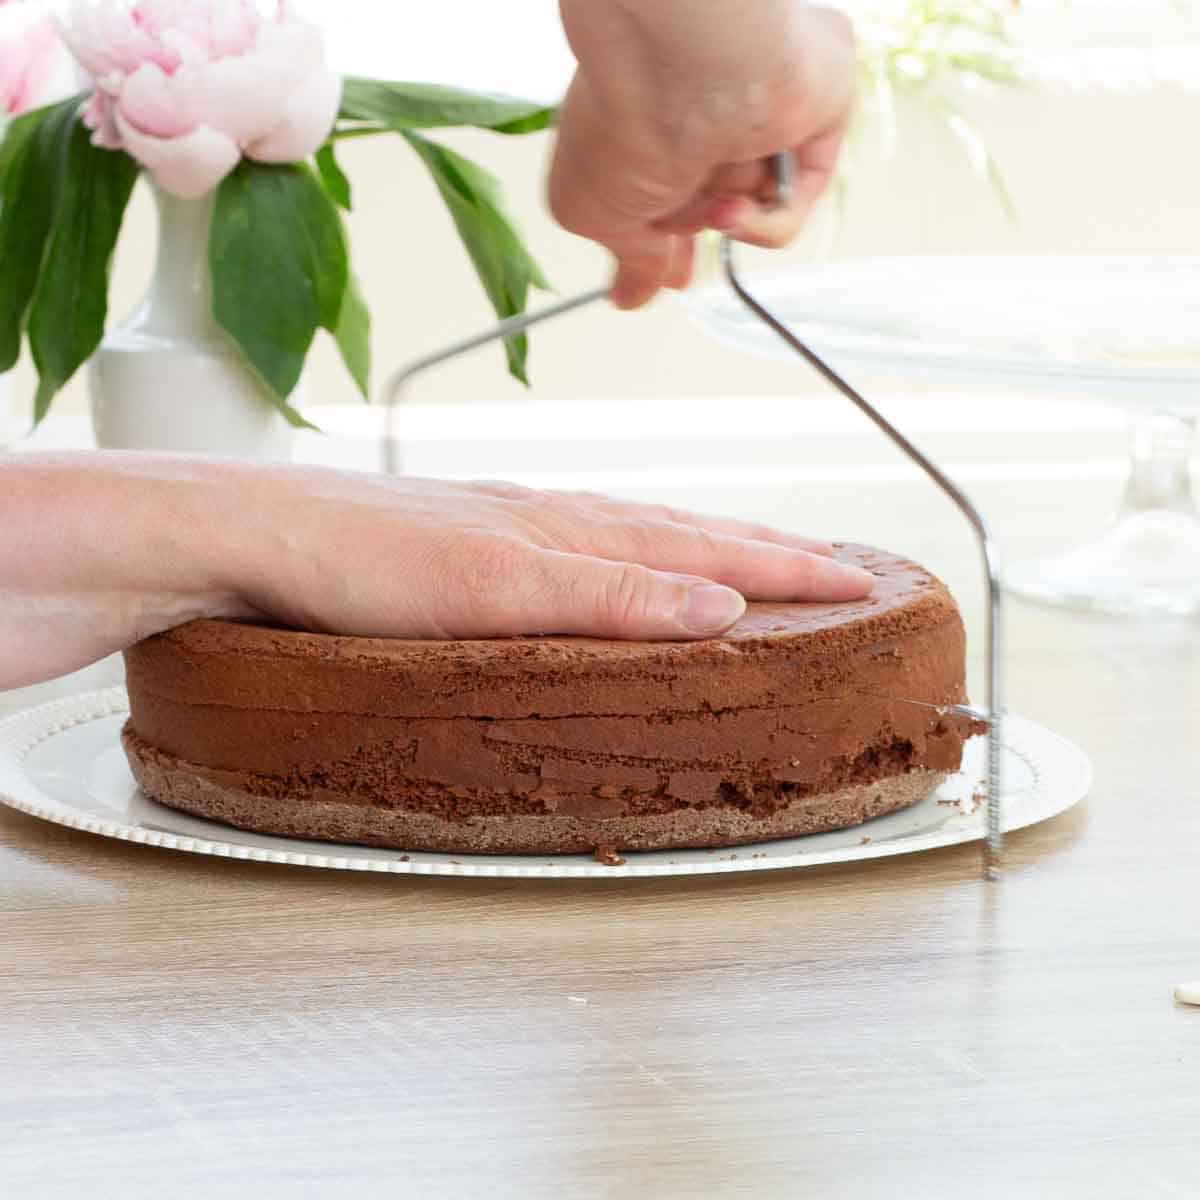 Torte mit Tortenschneider schneiden